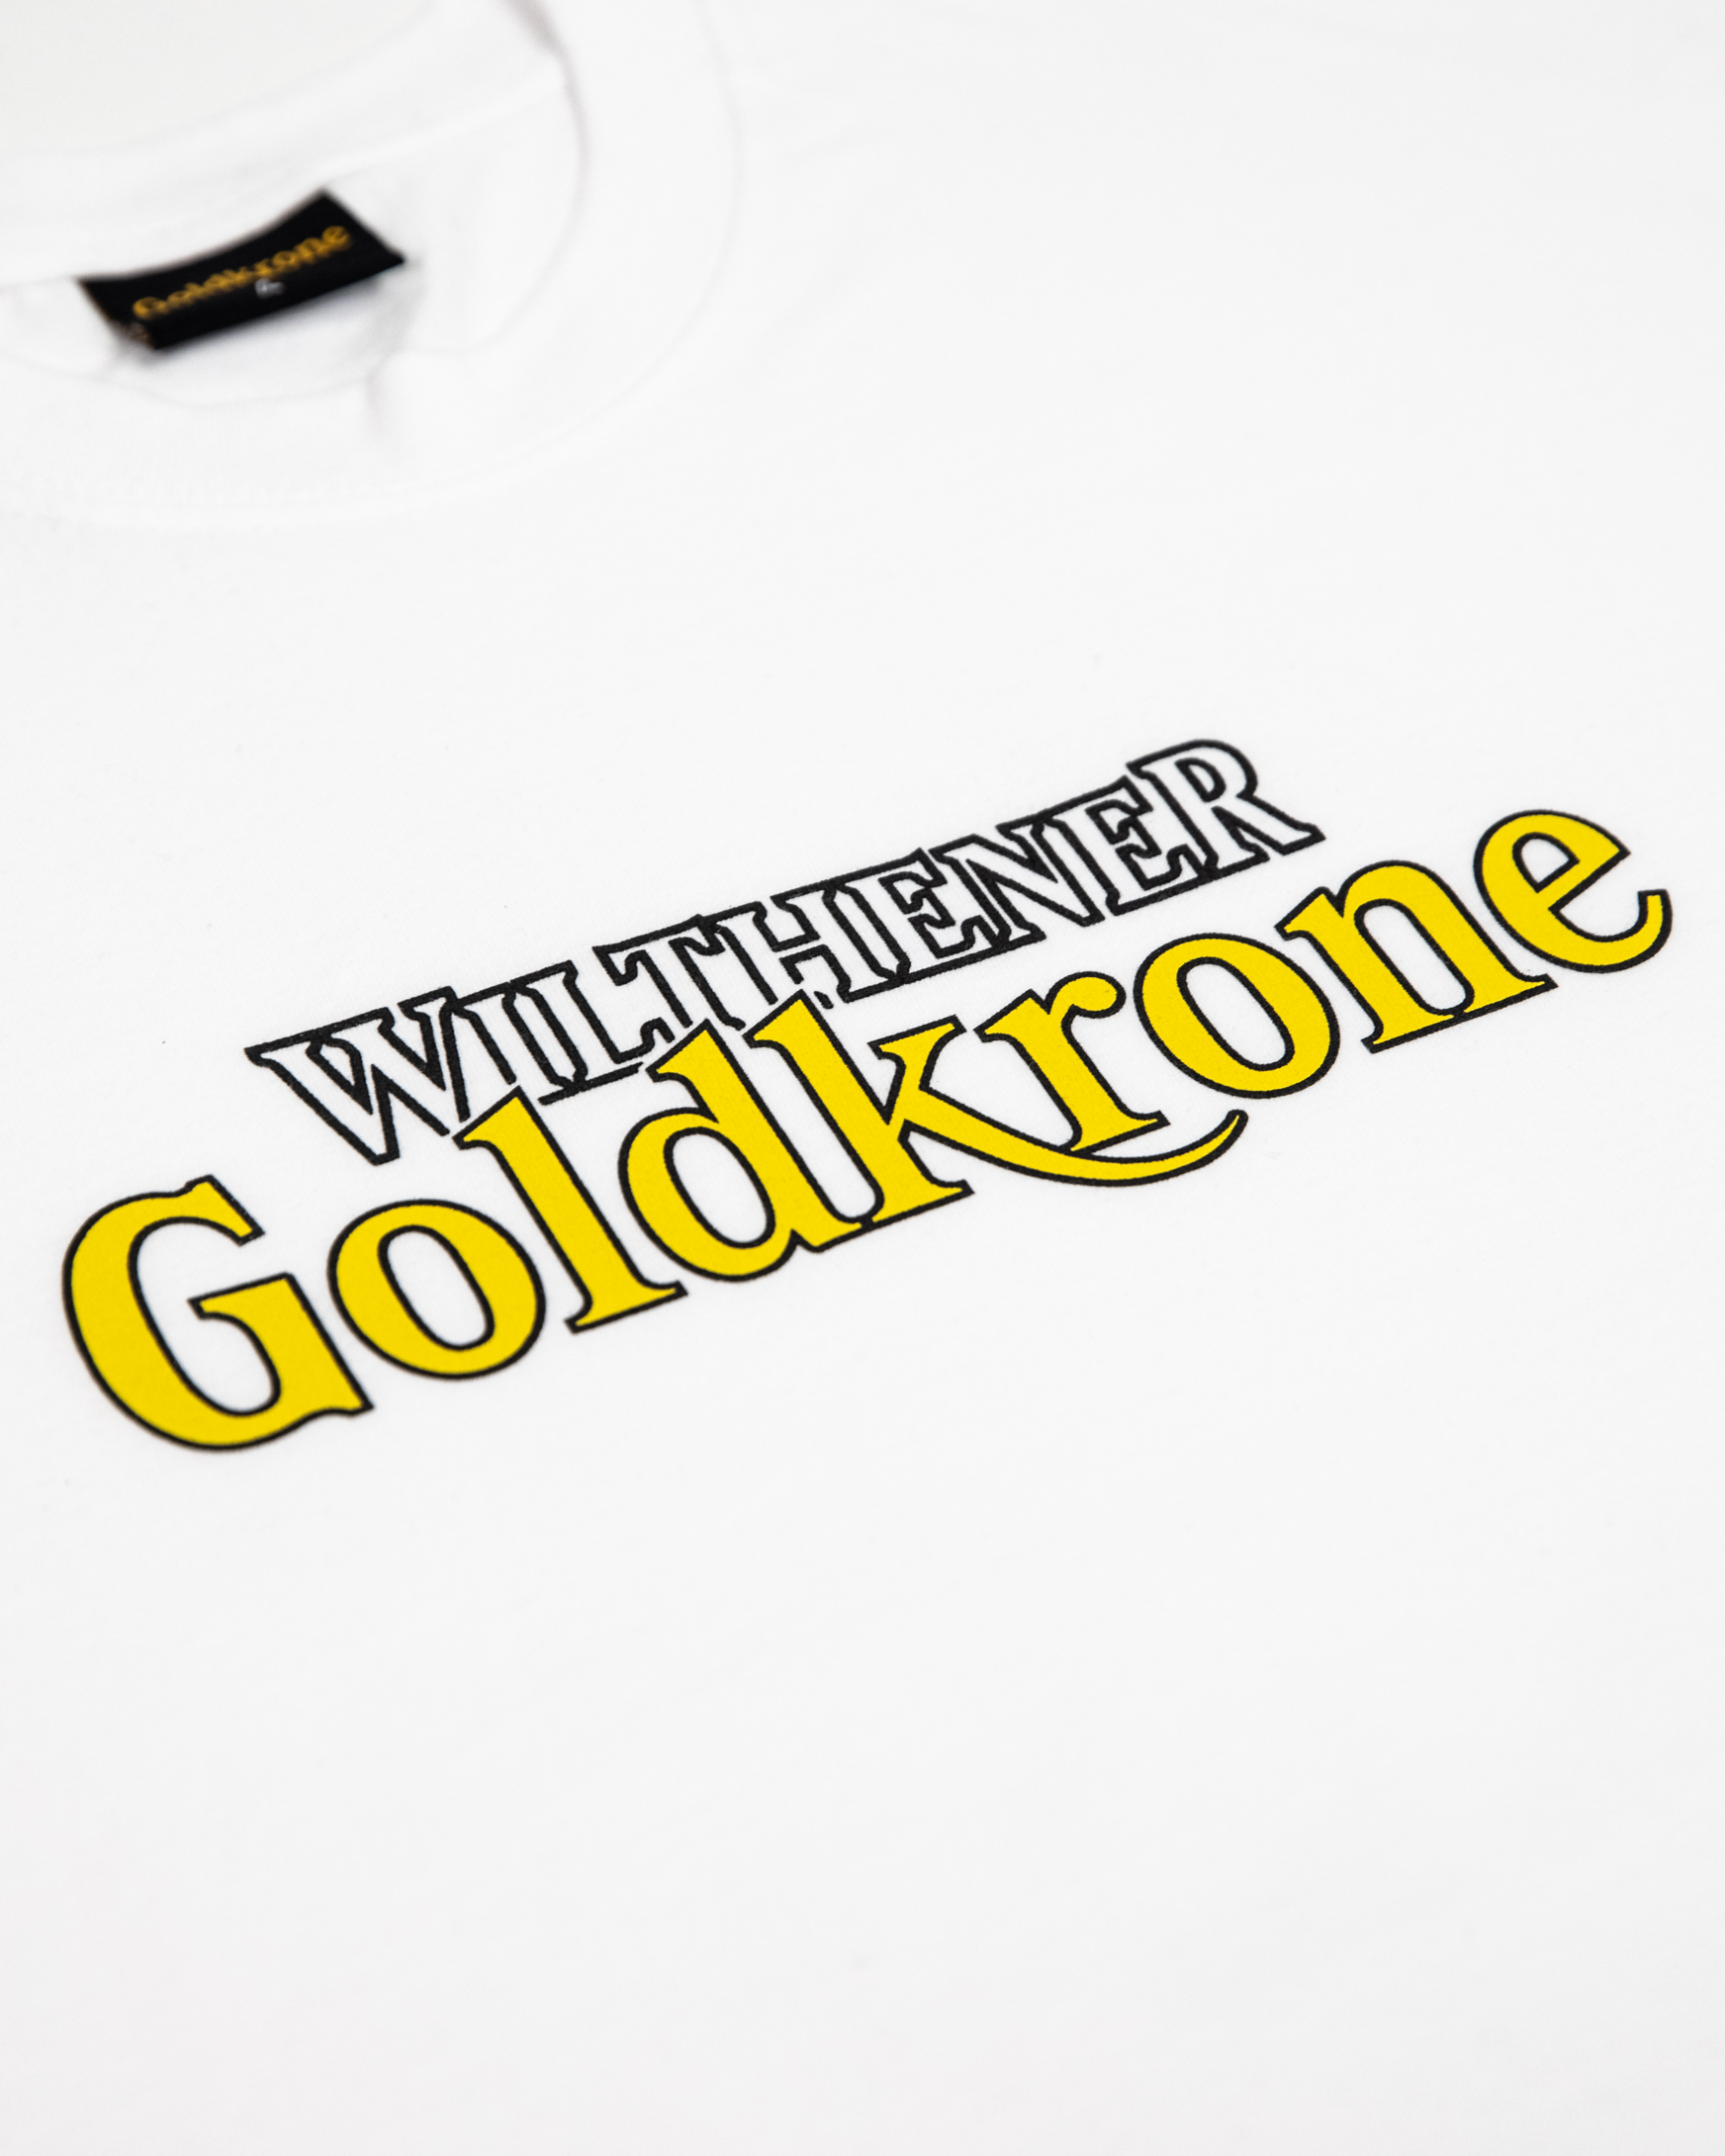 Wilthener Goldkrone T-Shirt weiß